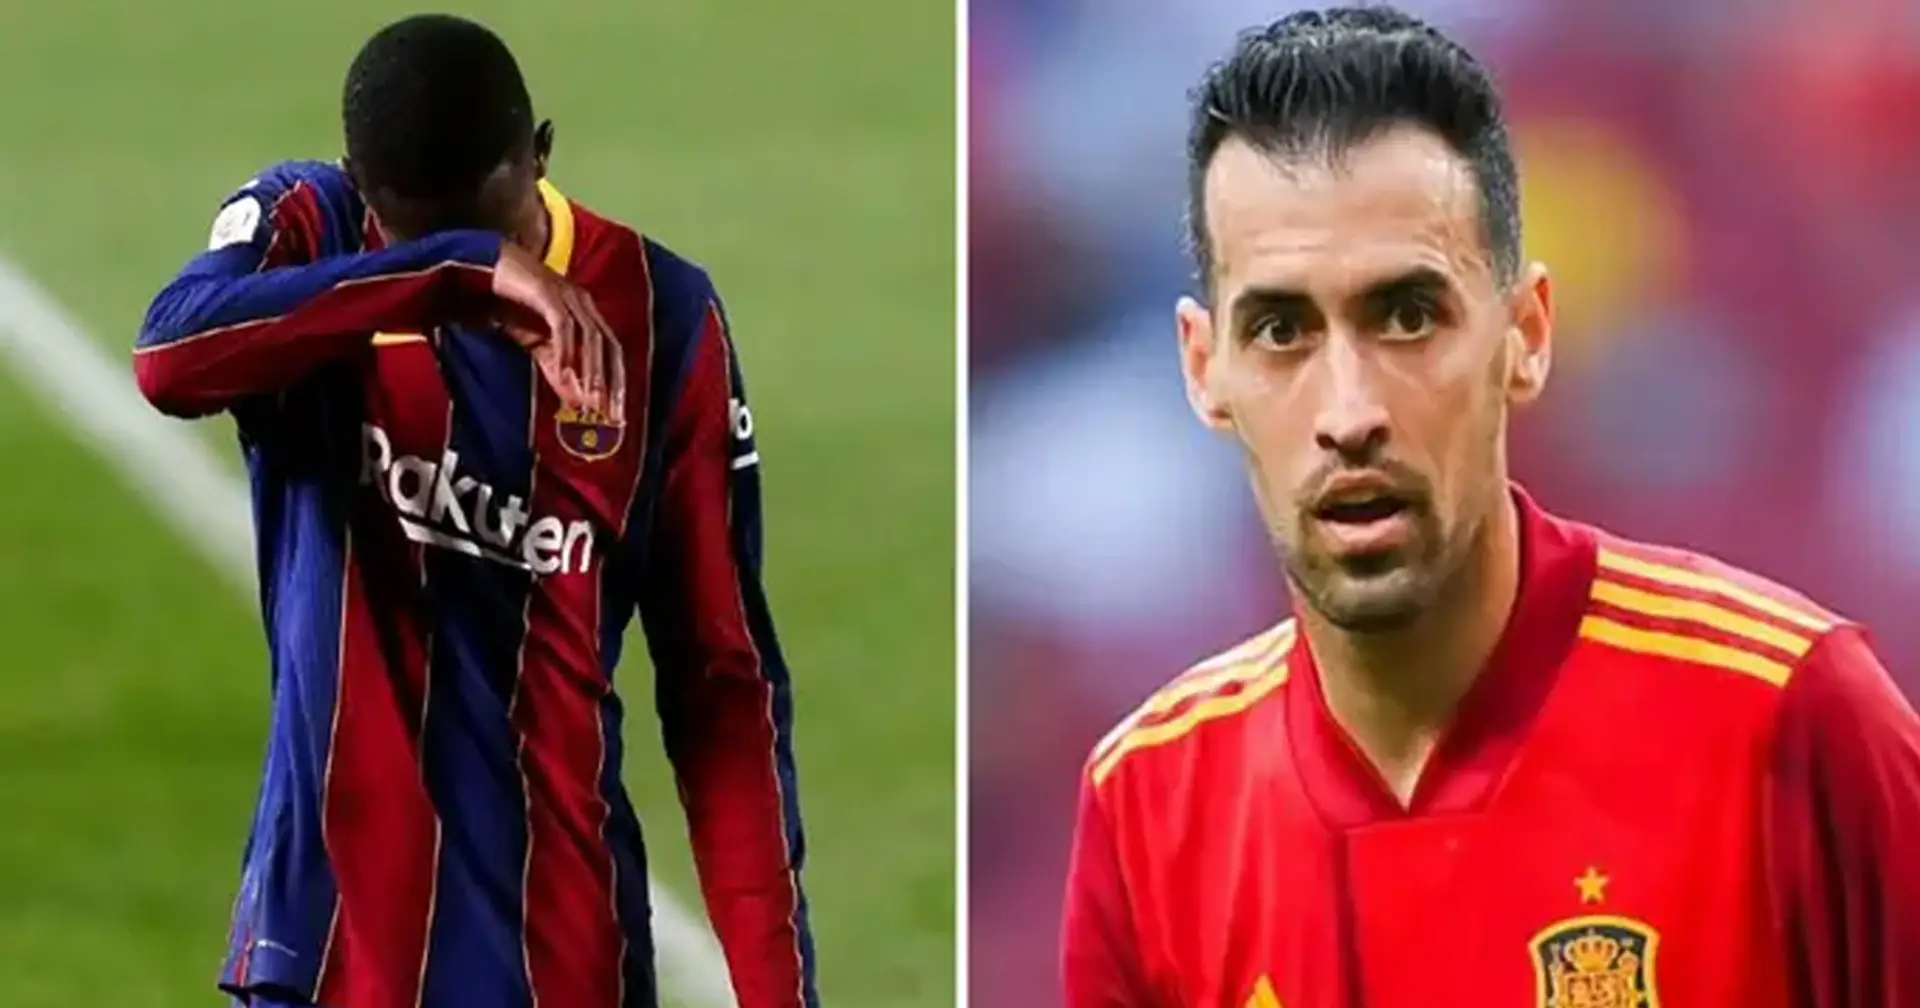 El Barça se prepara para firmar nuevos acuerdos con 2 jóvenes talentos y 3 breves noticias que quizá te perdiste